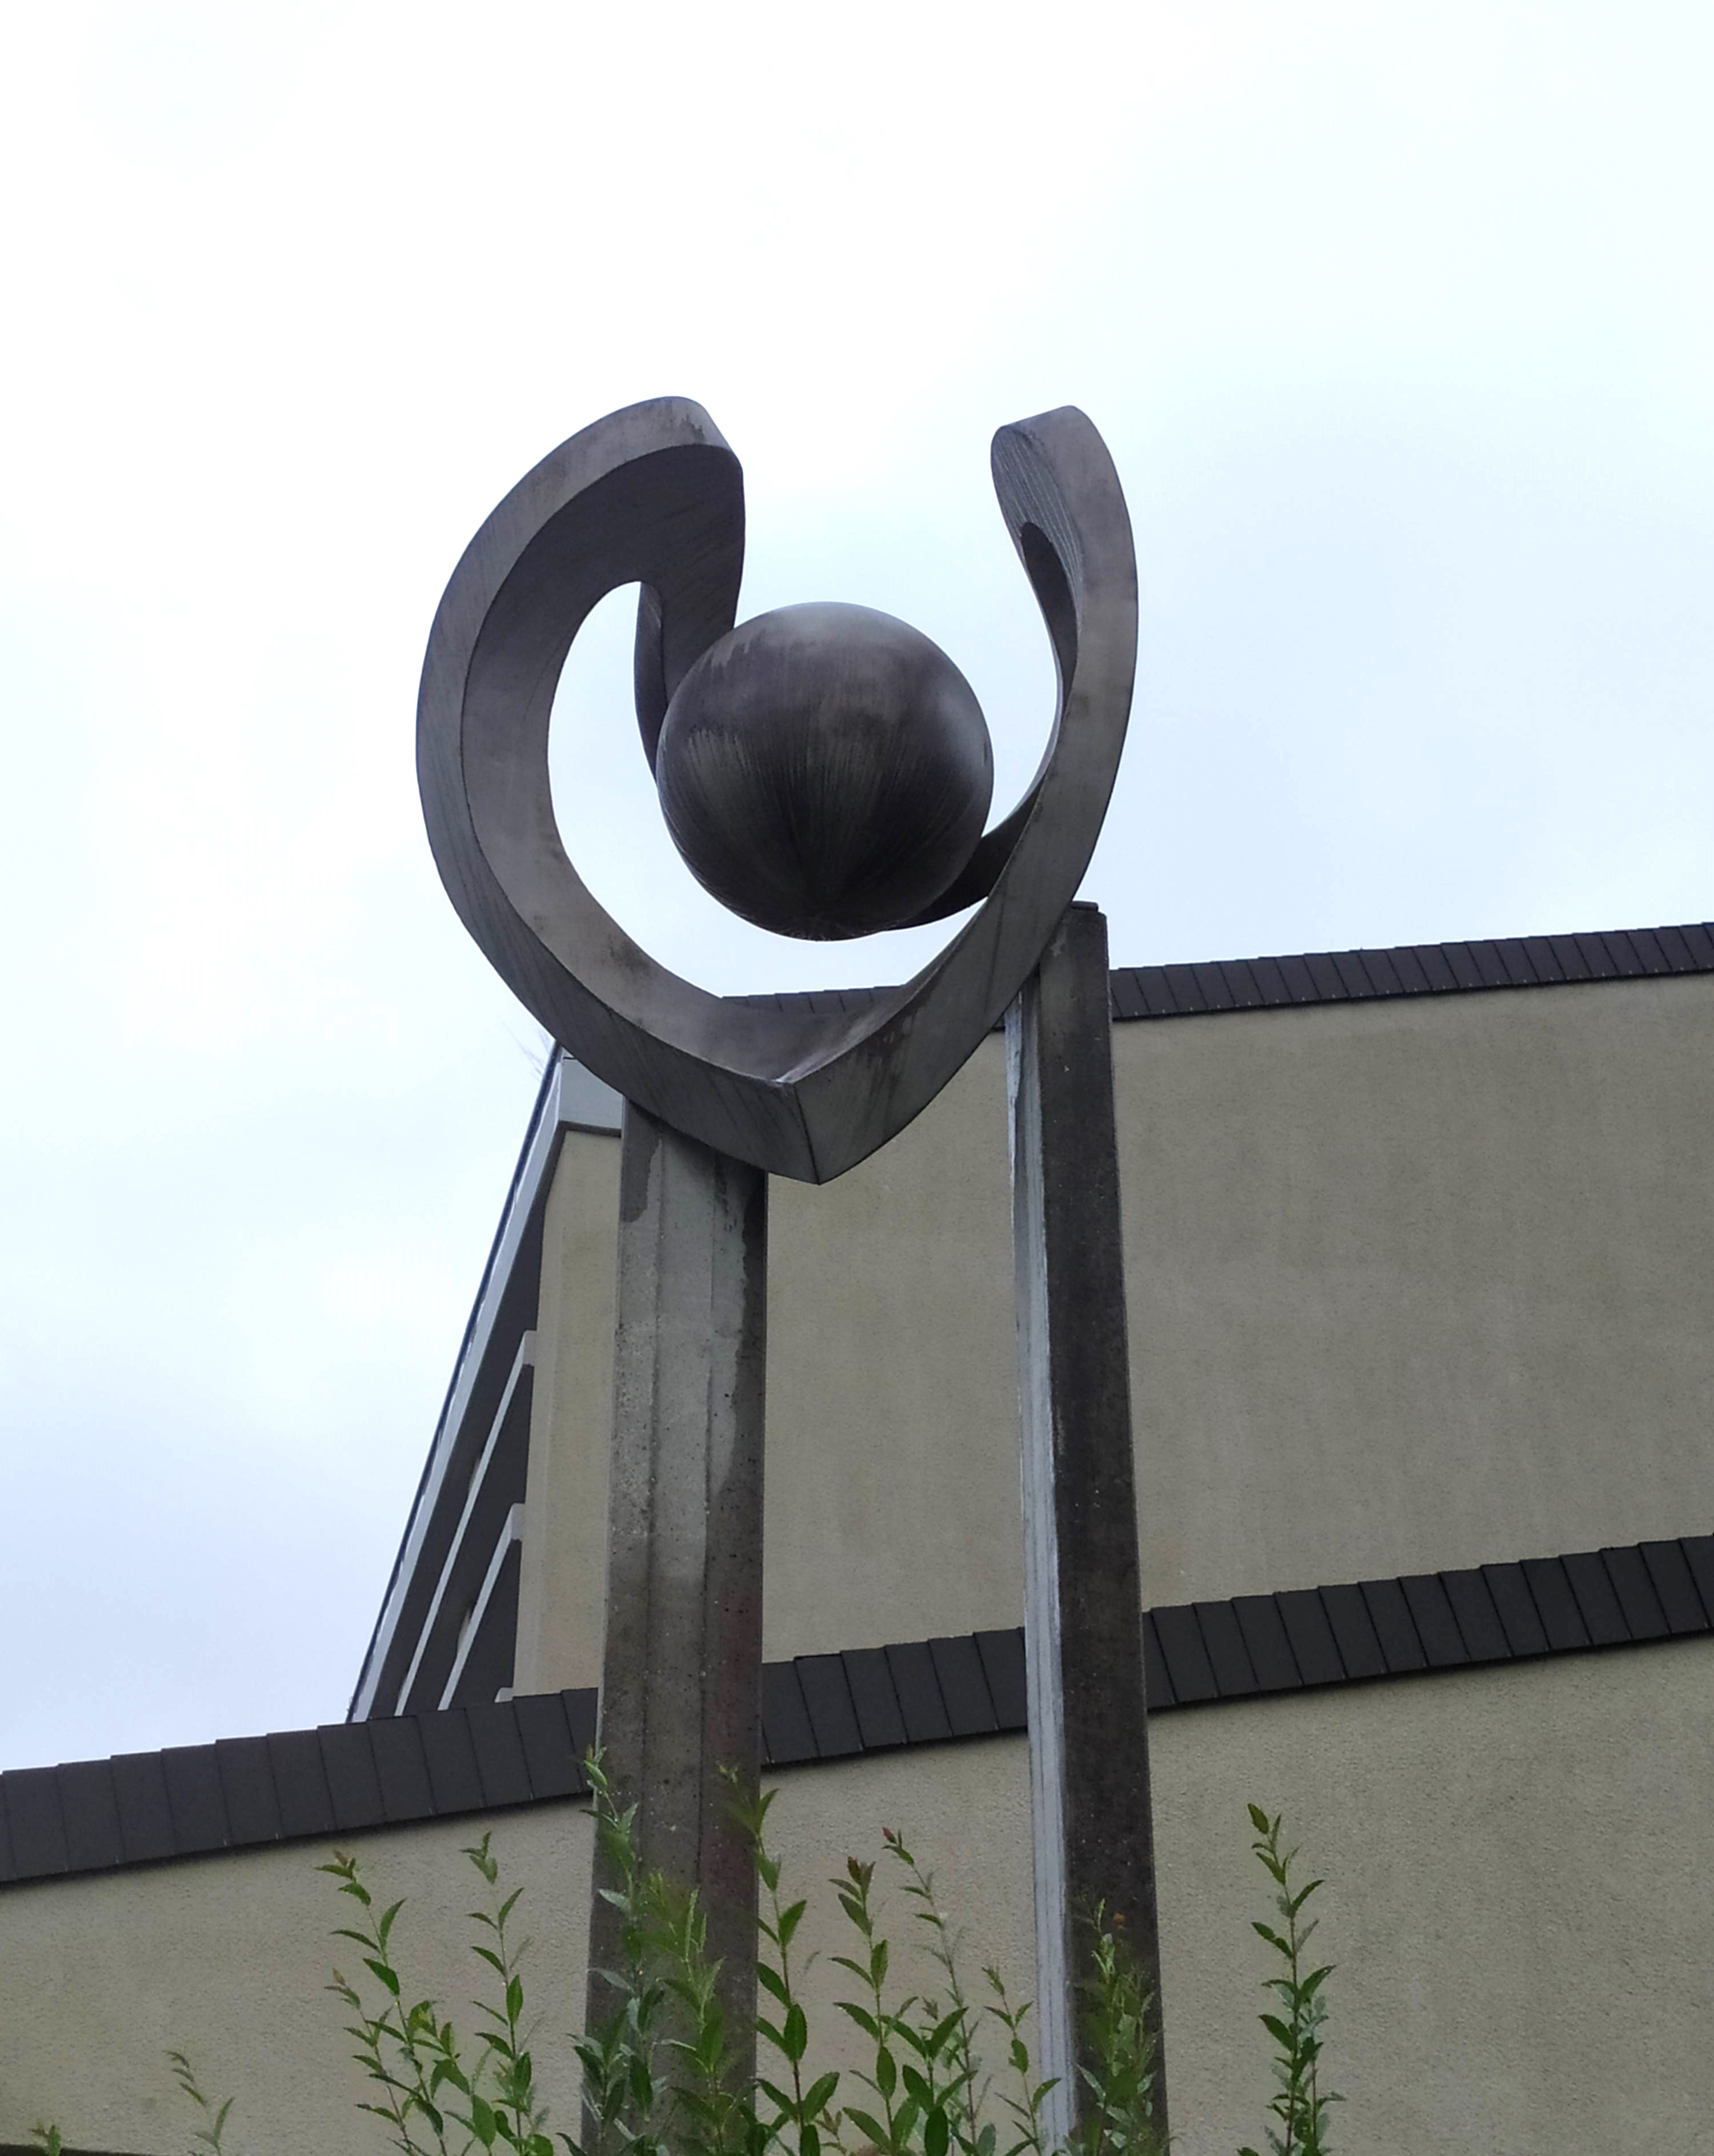 M. Piotrowski, World in the Heart/Welt im Herz (welded aluminium, 183x193cm), 1978. Dettenriederstrasse 24, Weisslingen, Switzerland